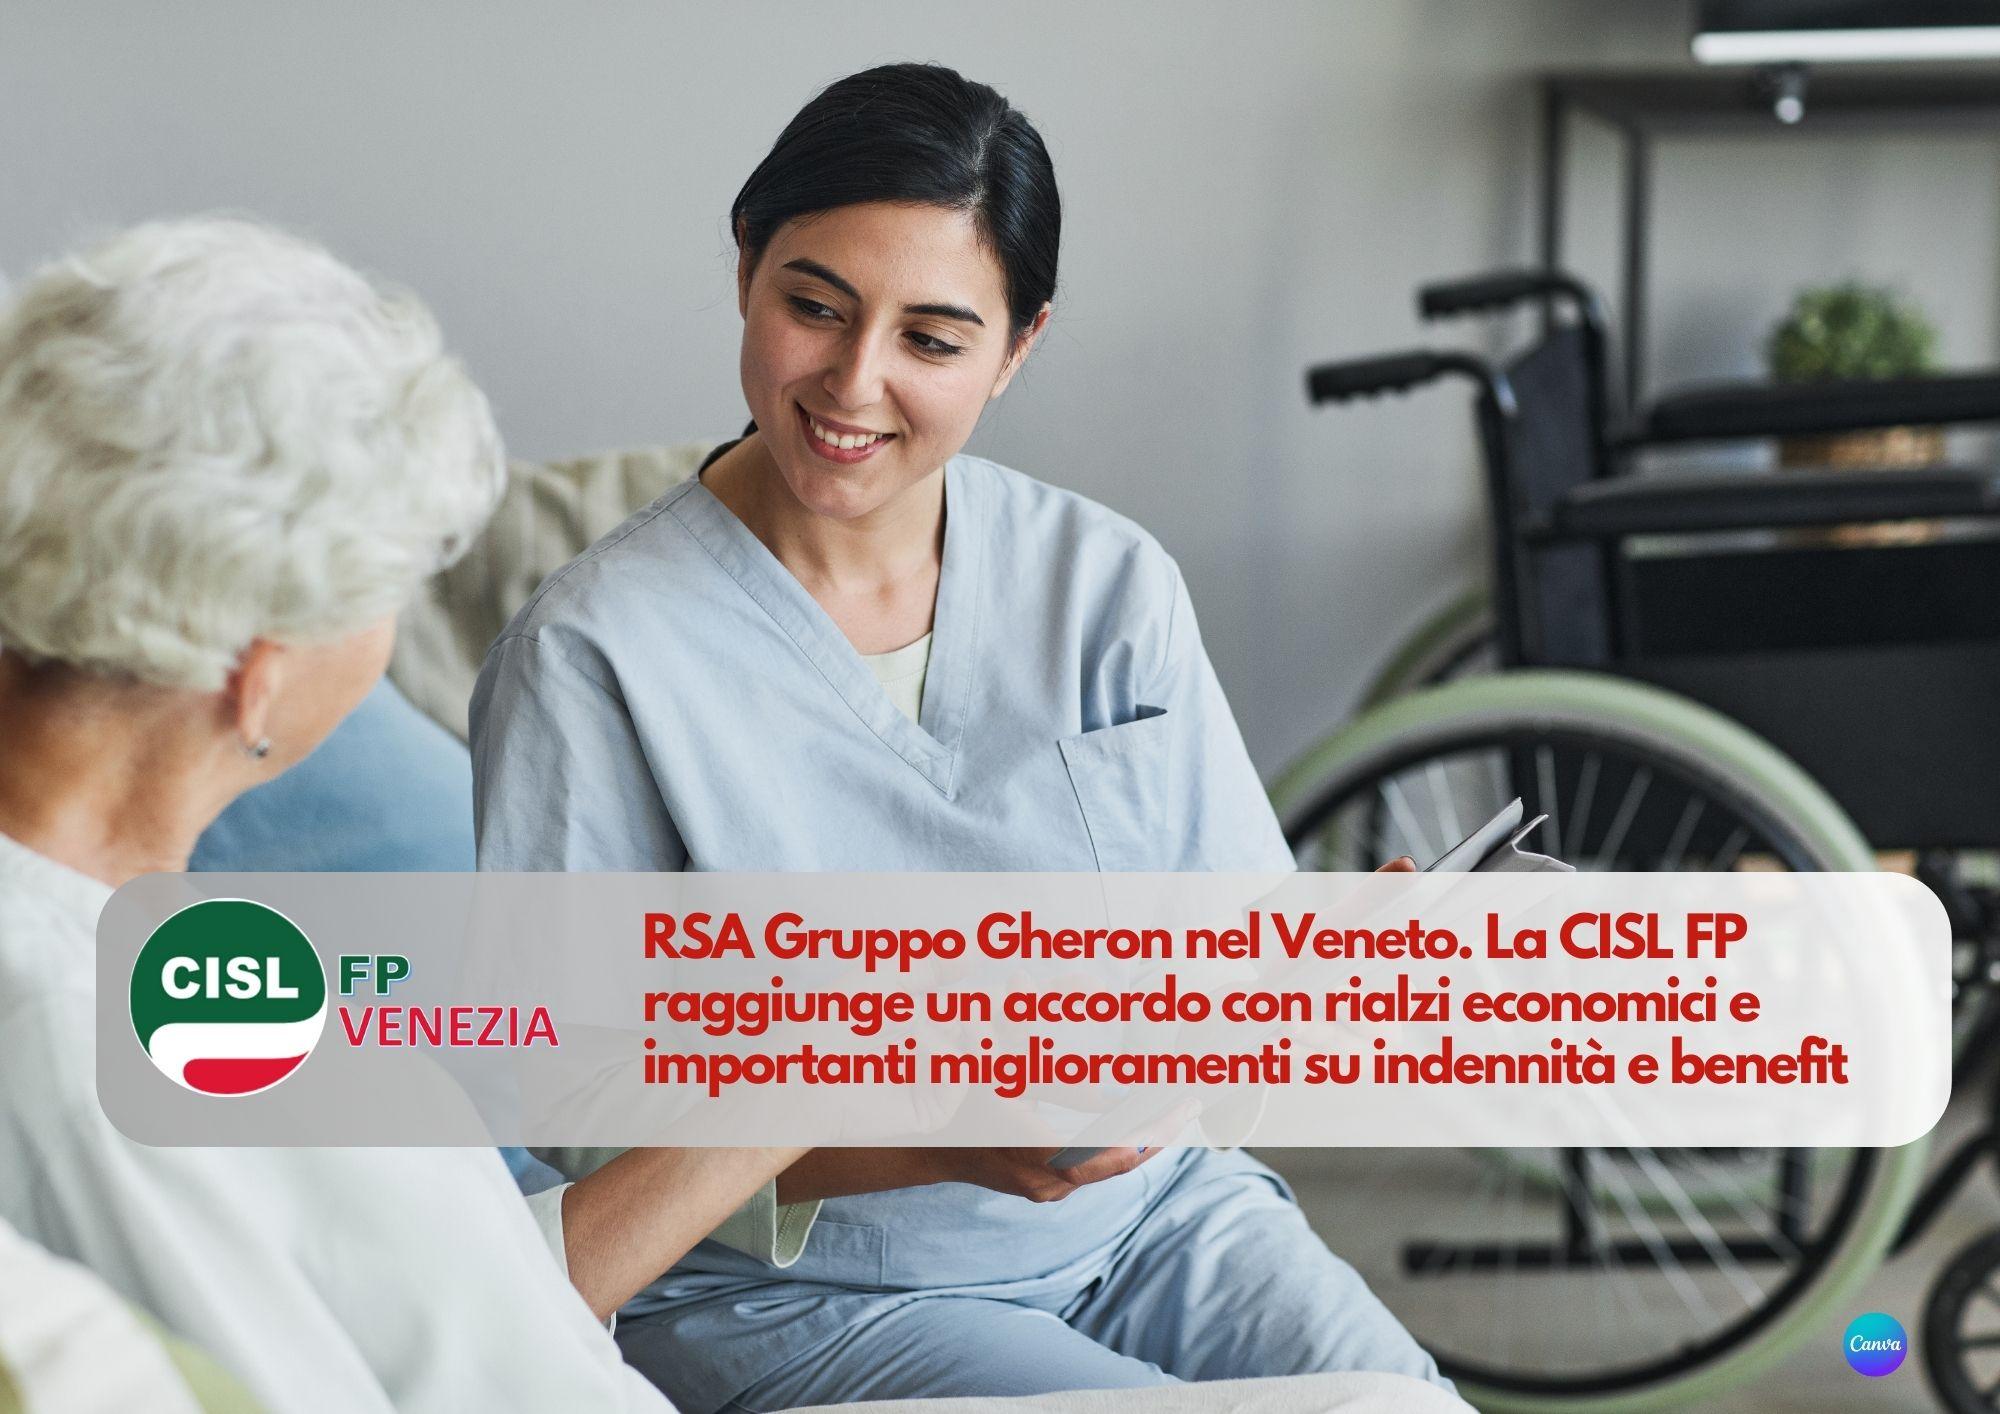 CISL FP Venezia. Accordo per migliorare stipendi e assistenza nelle strutture del Gruppo Gheron